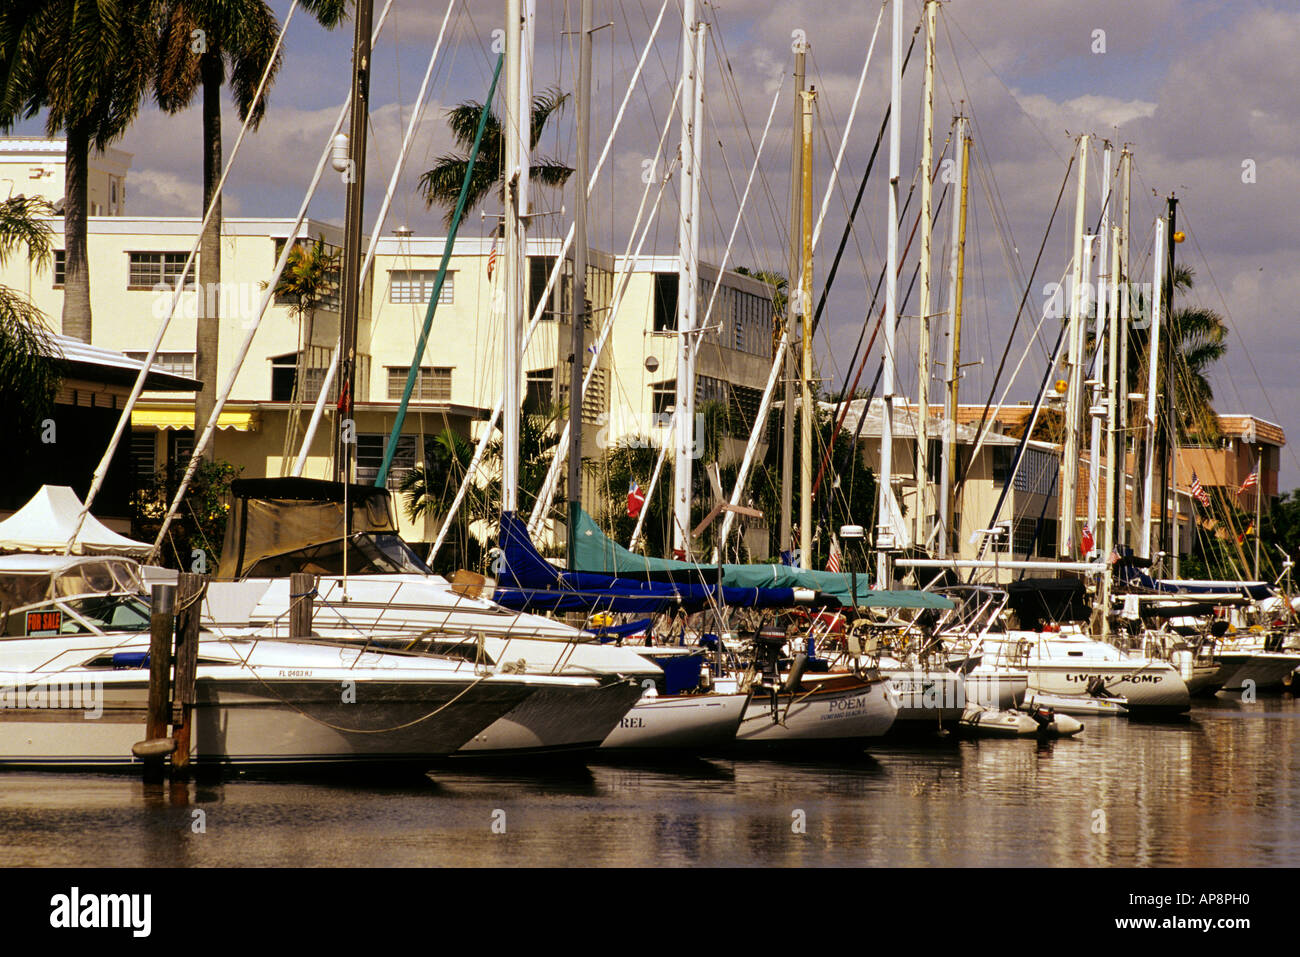 Ft. Lauderdale, en Floride. Parking bateau dans un quartier résidentiel. Banque D'Images